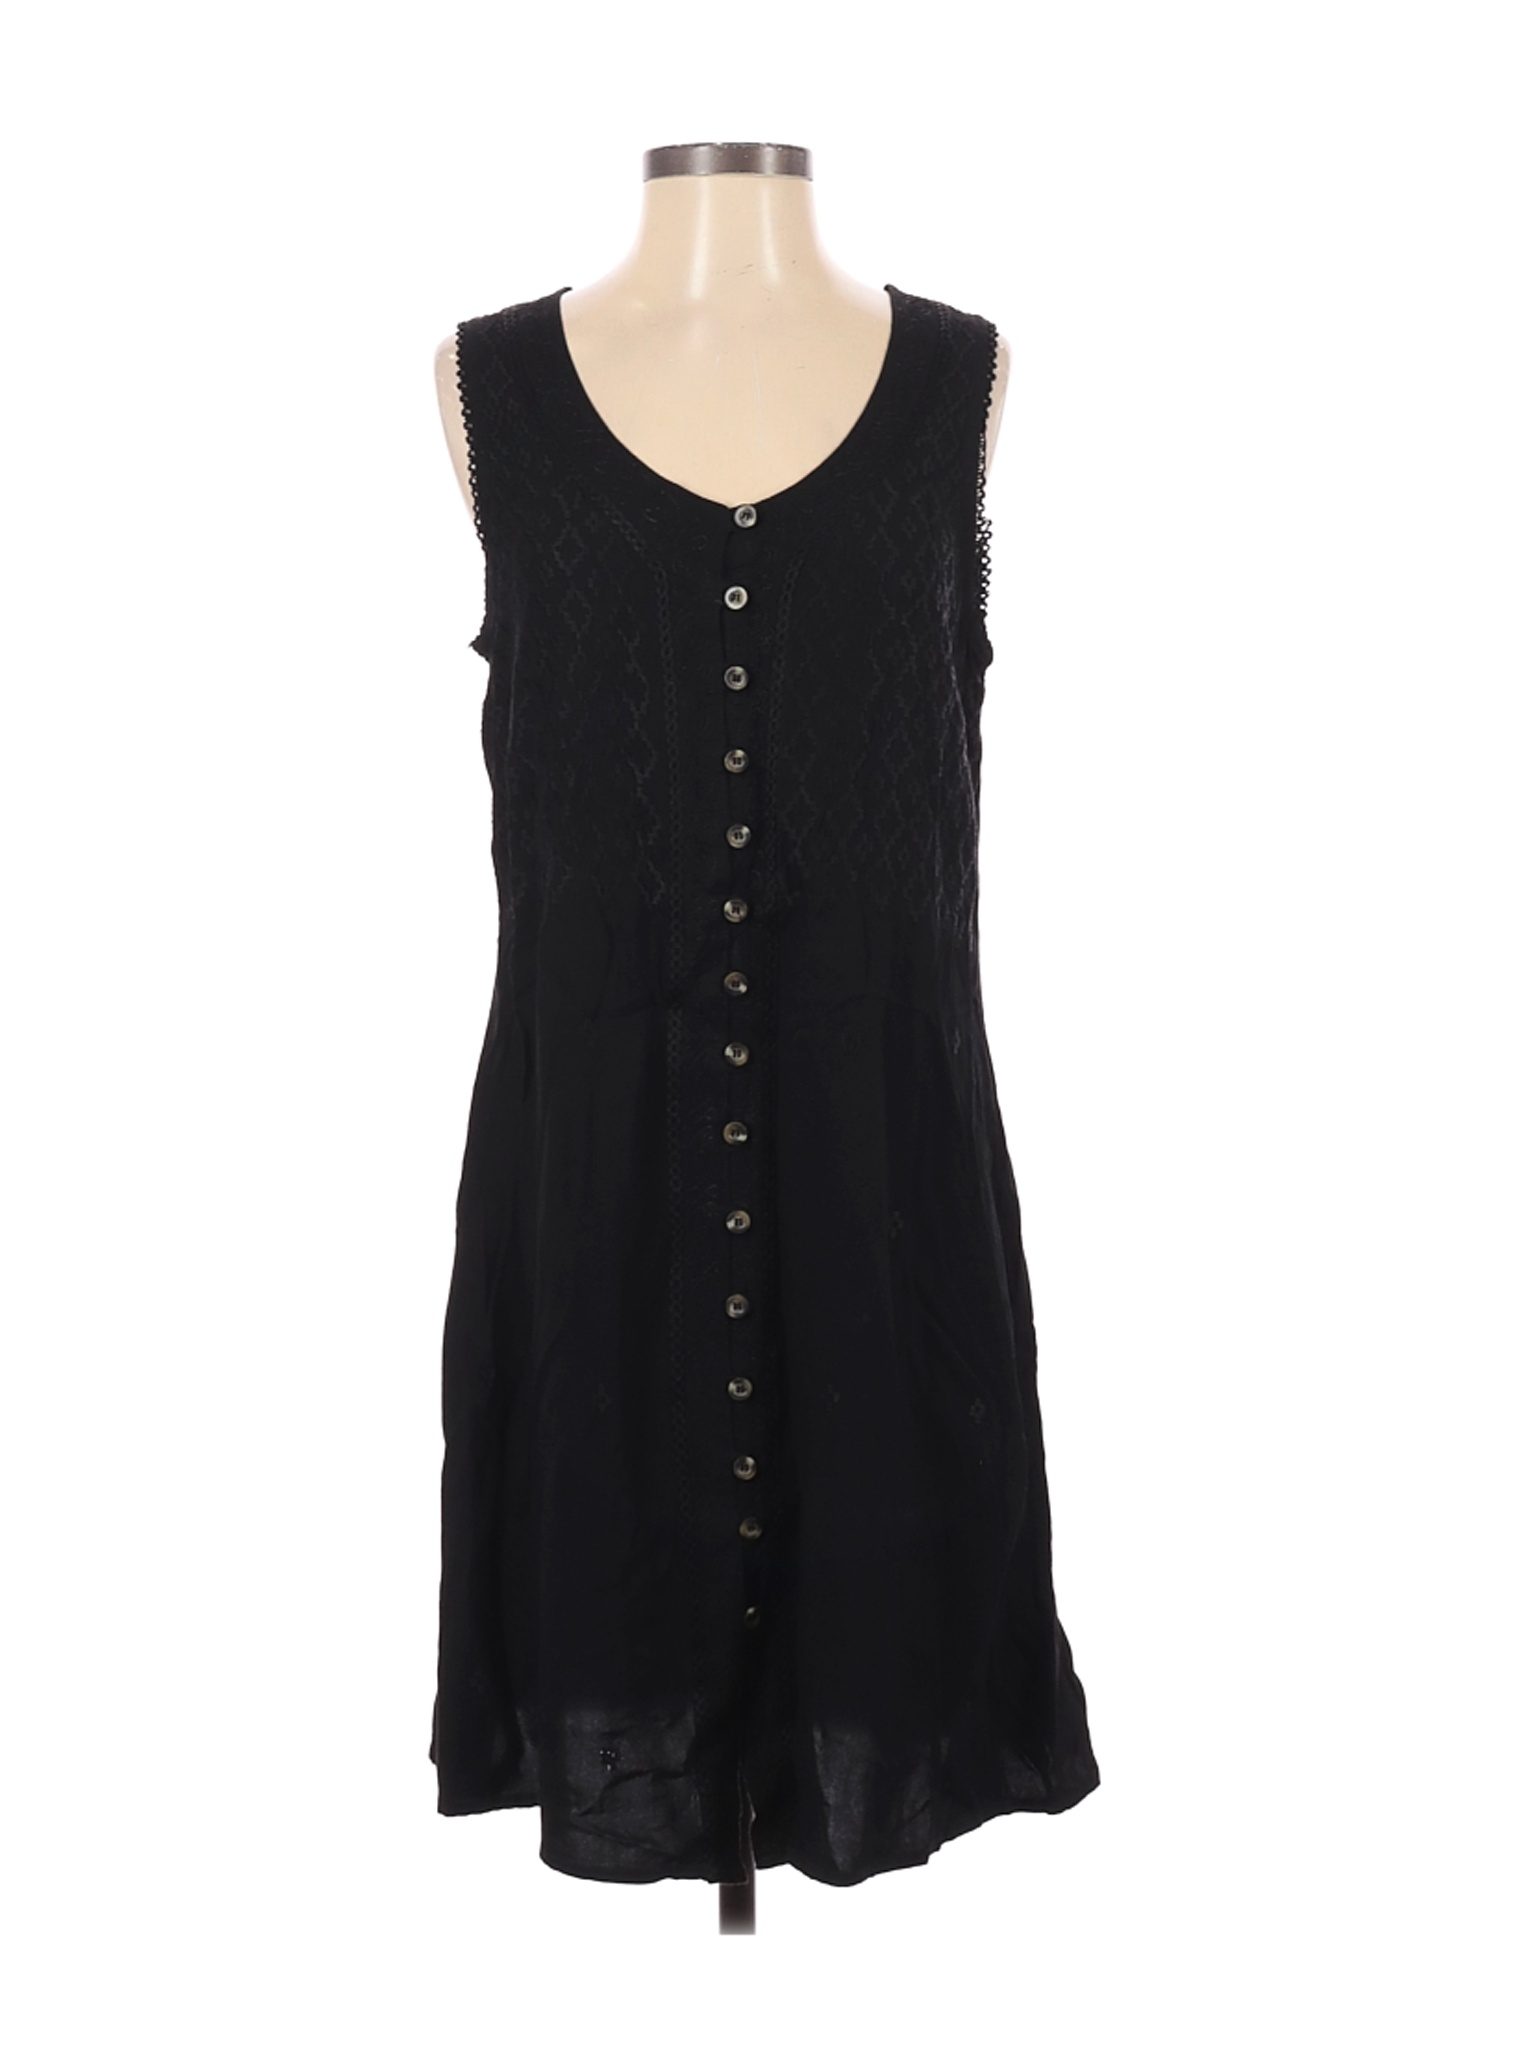 Raya Sun Women Black Casual Dress S | eBay